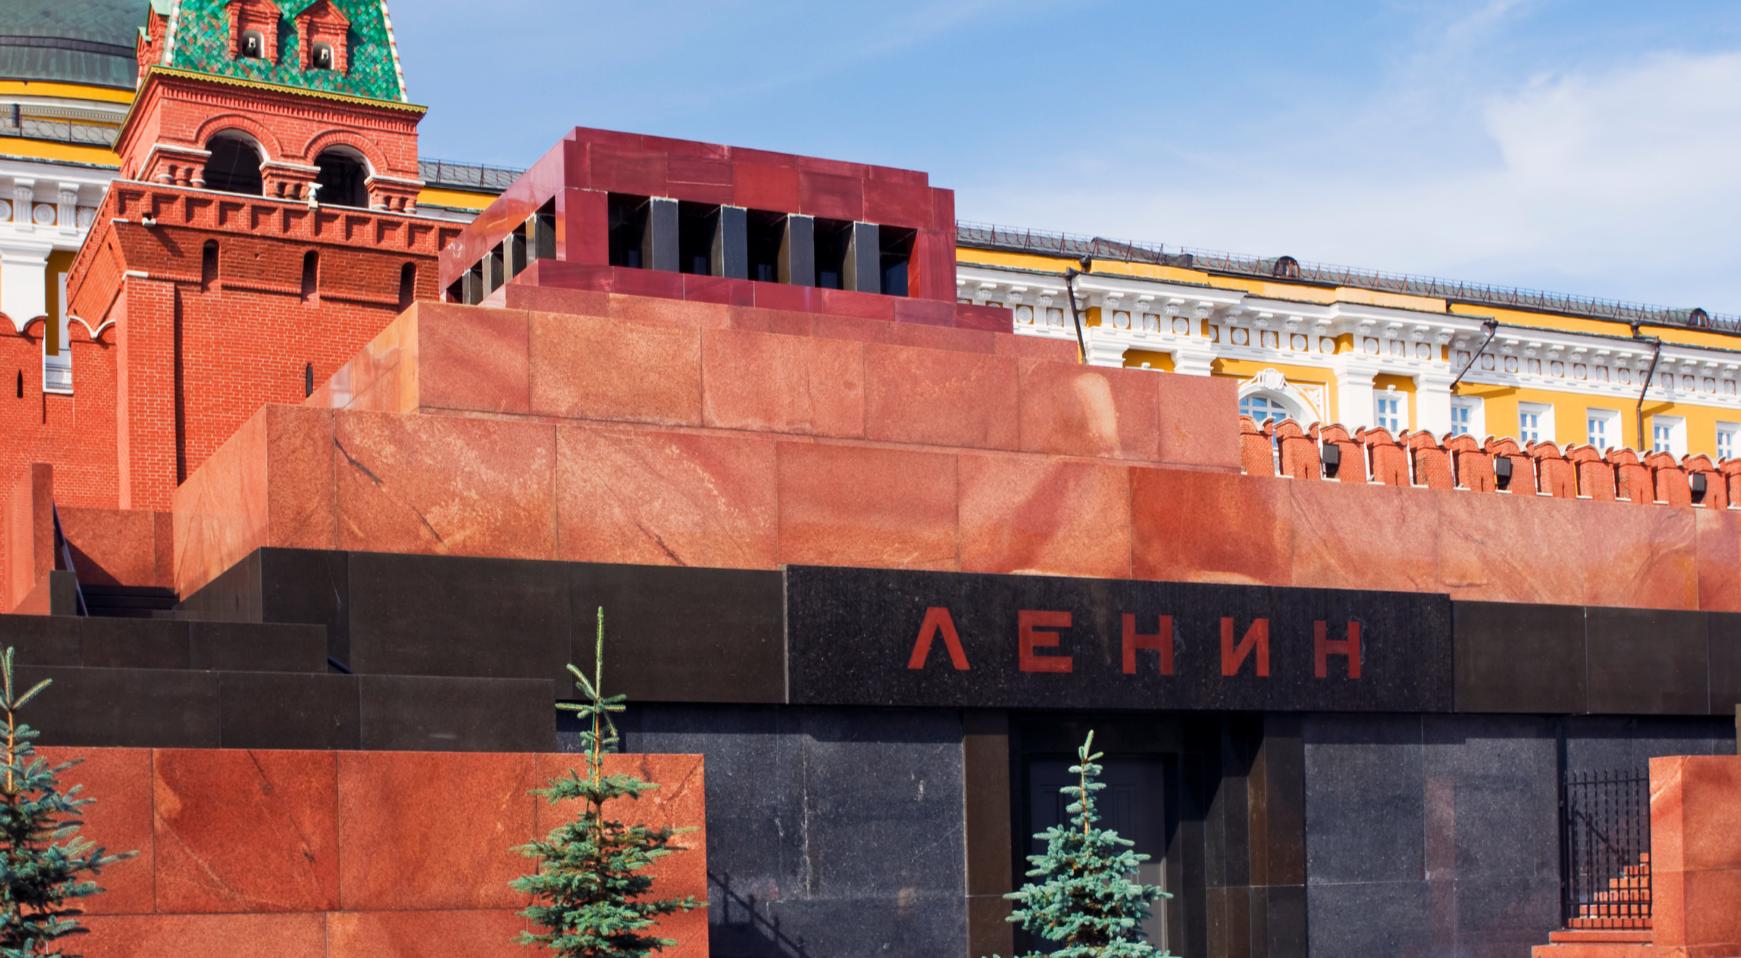 музей имени ленина в москве на красной площади